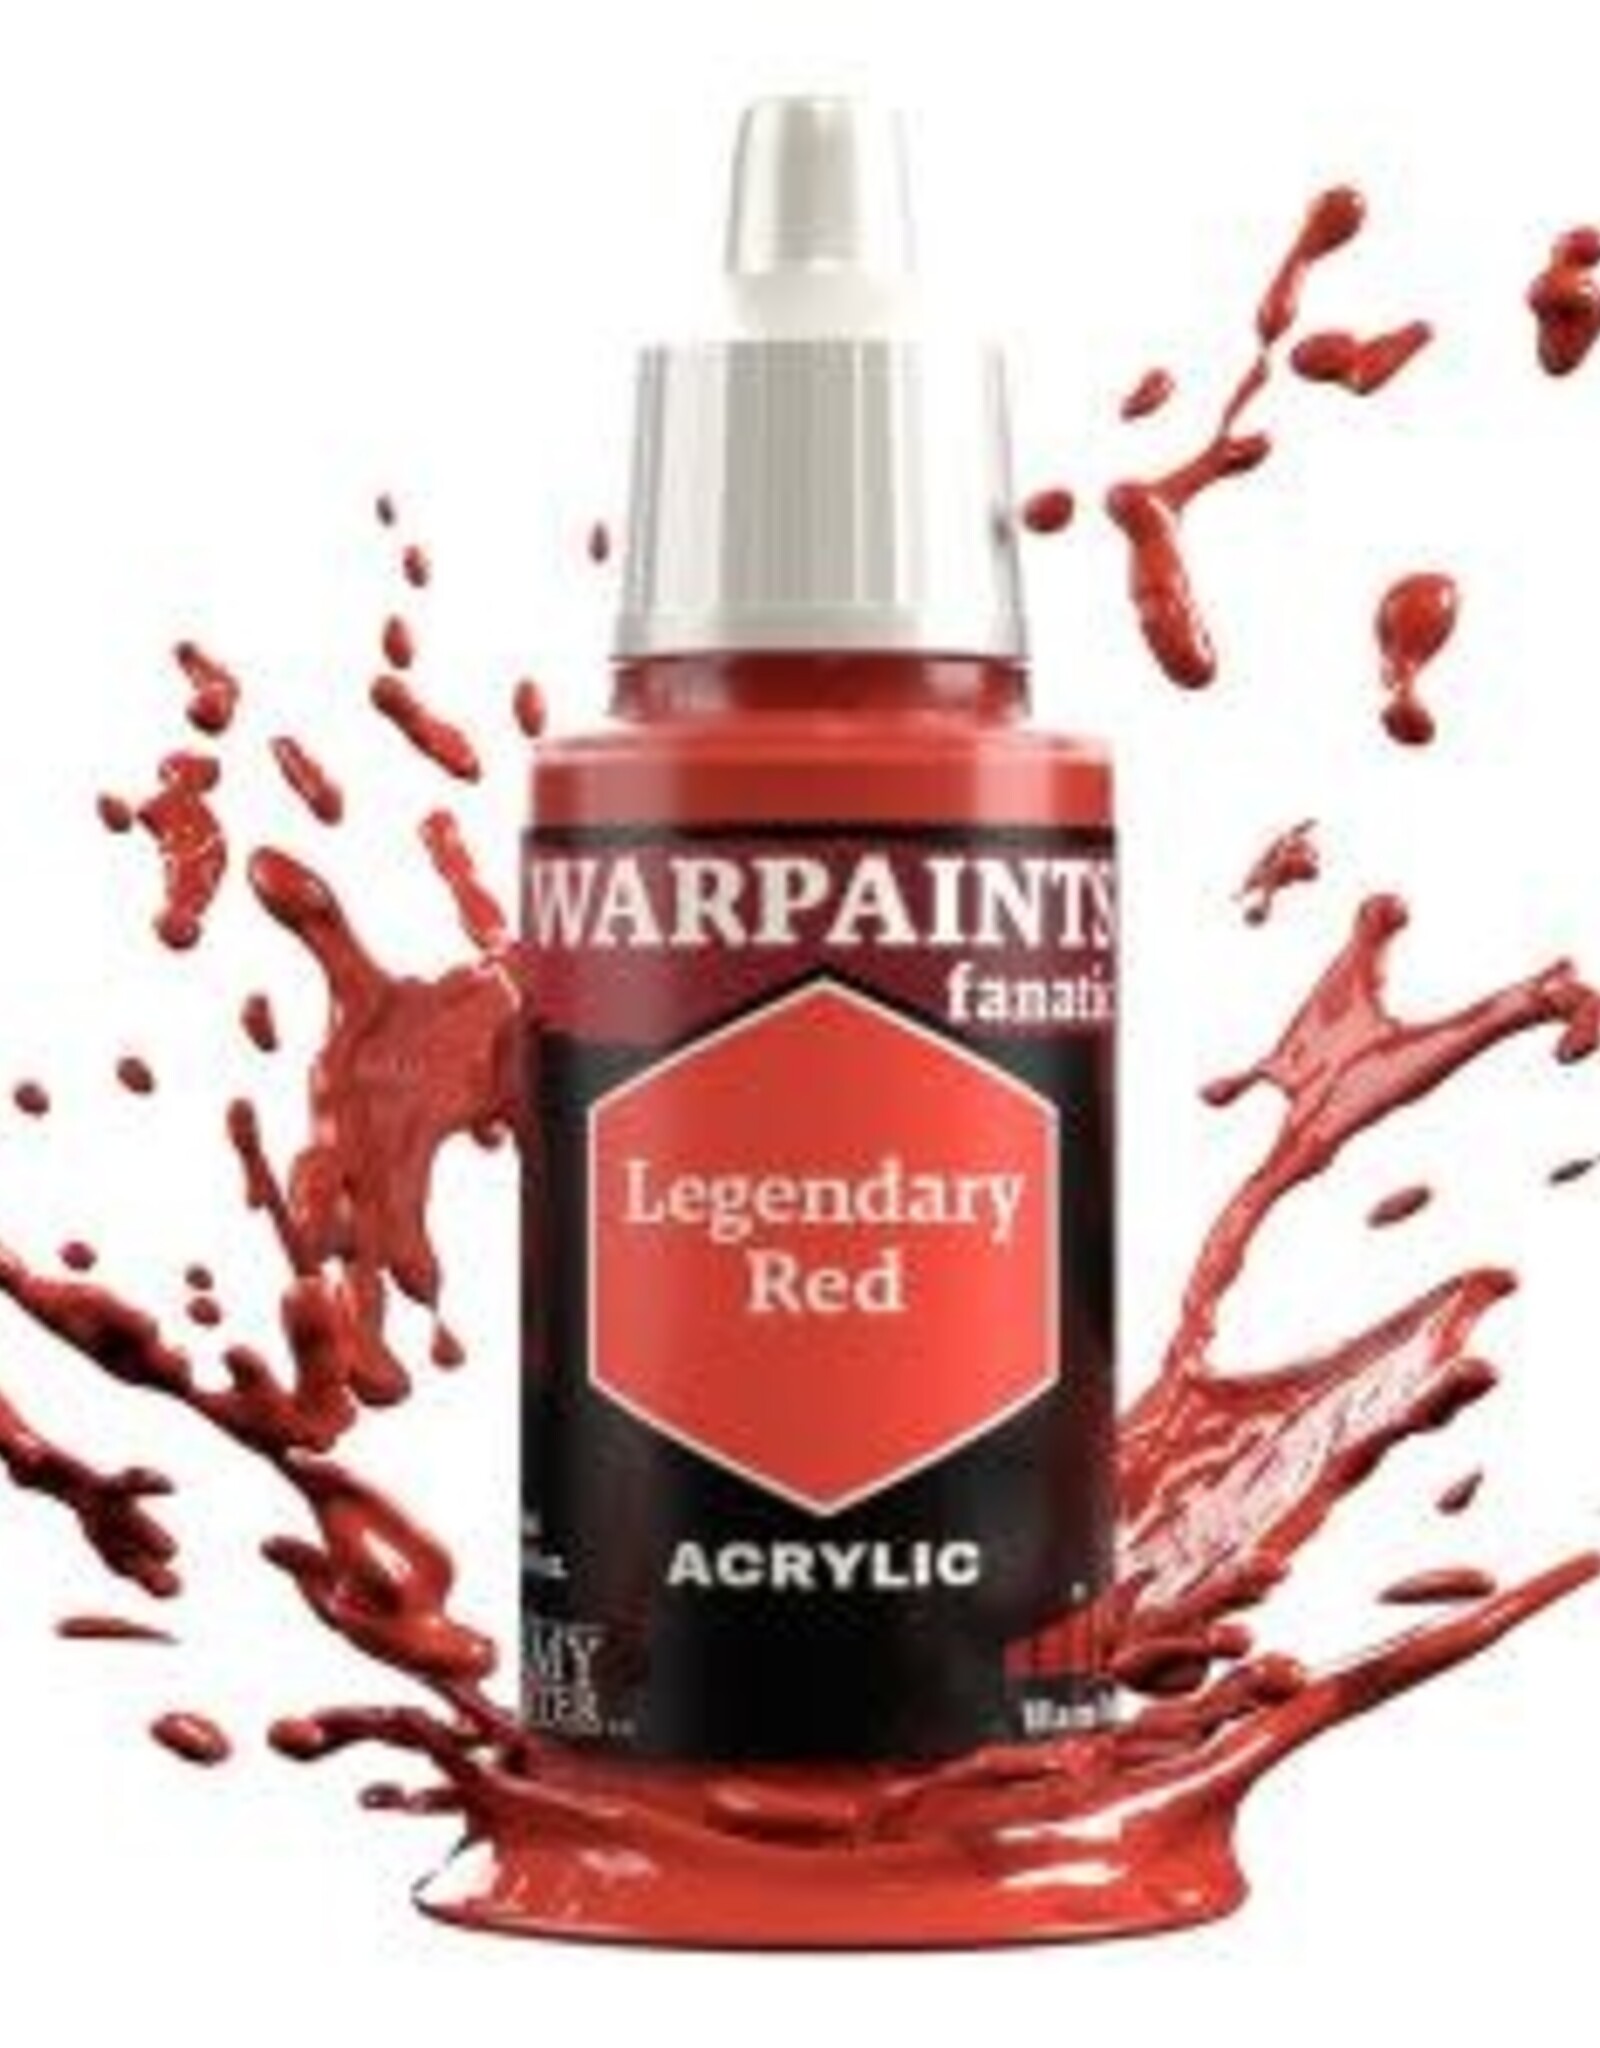 Warpaints Fanatic: Legendary Red